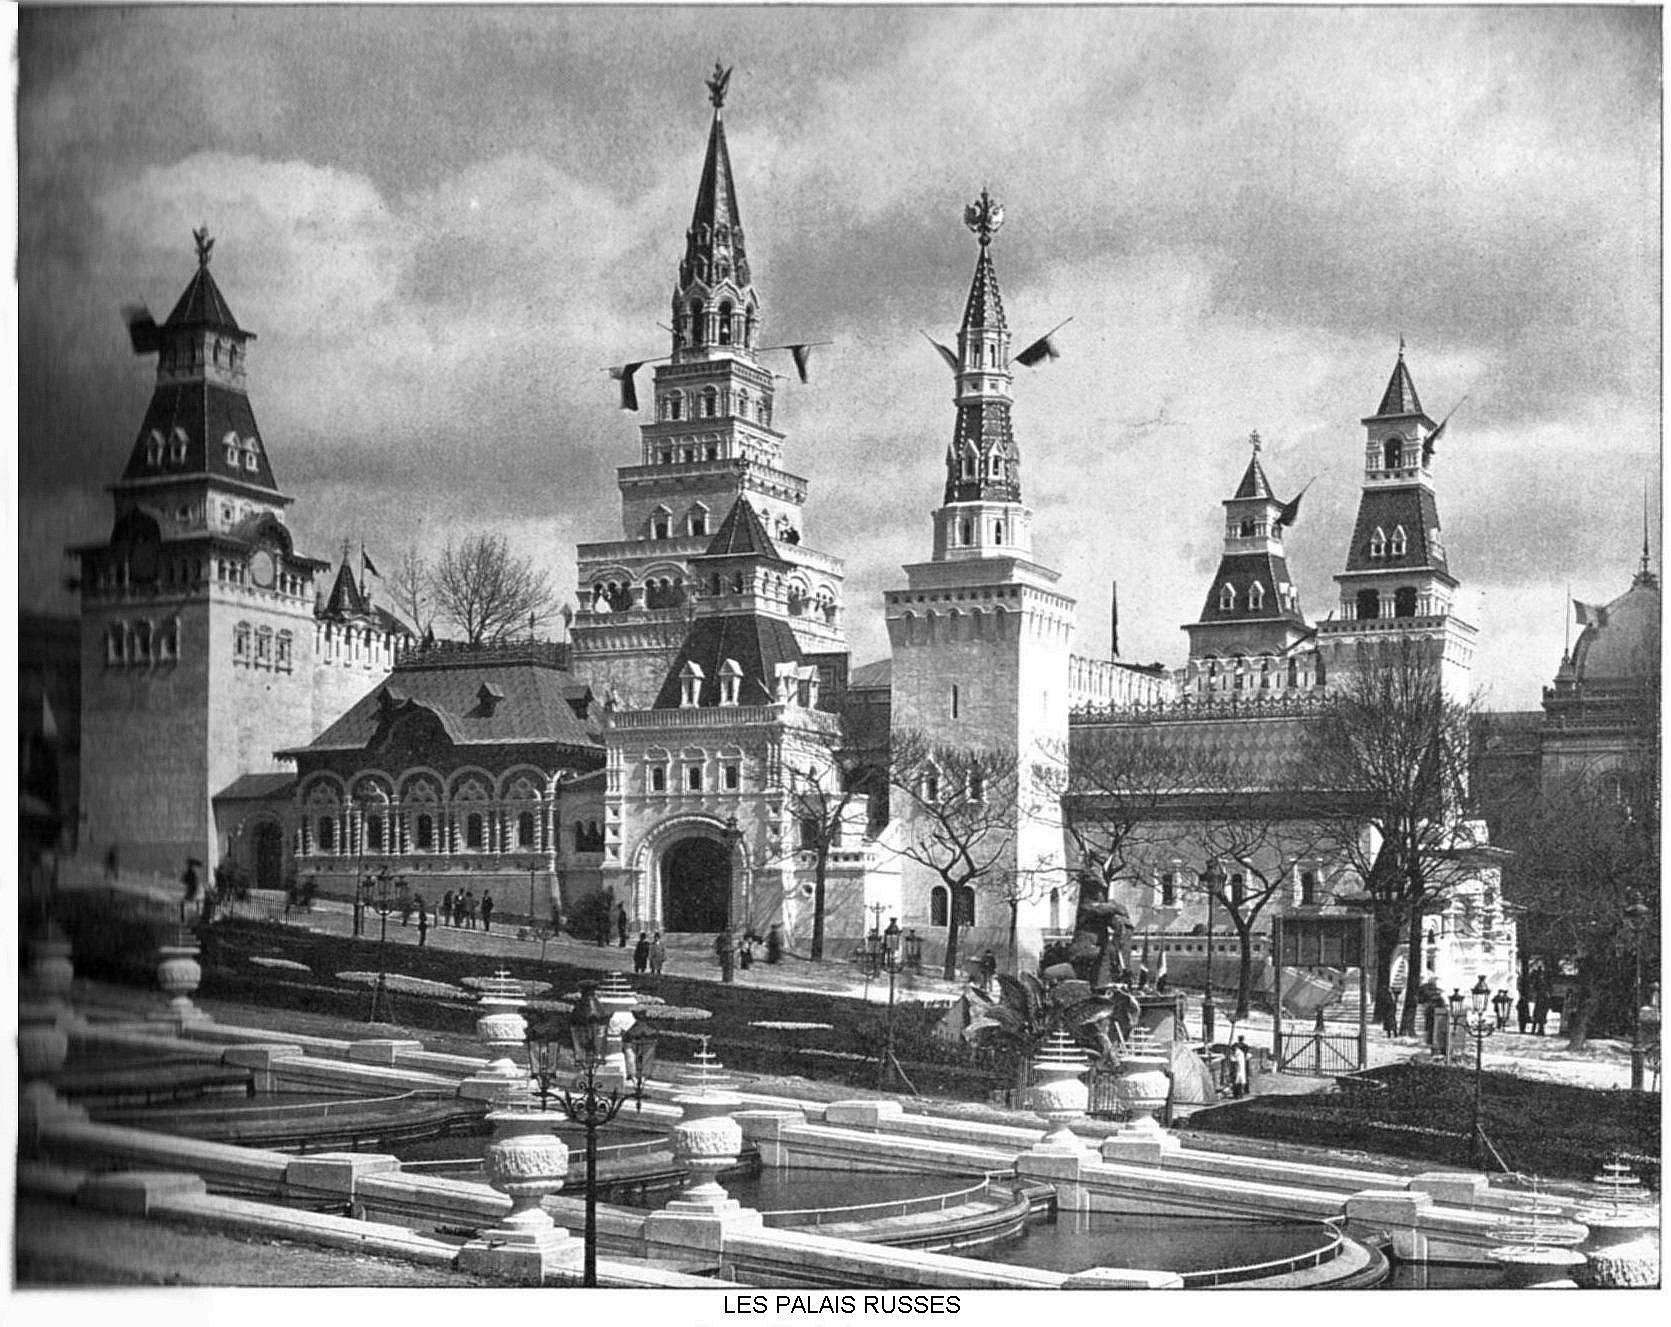 Les palais russes